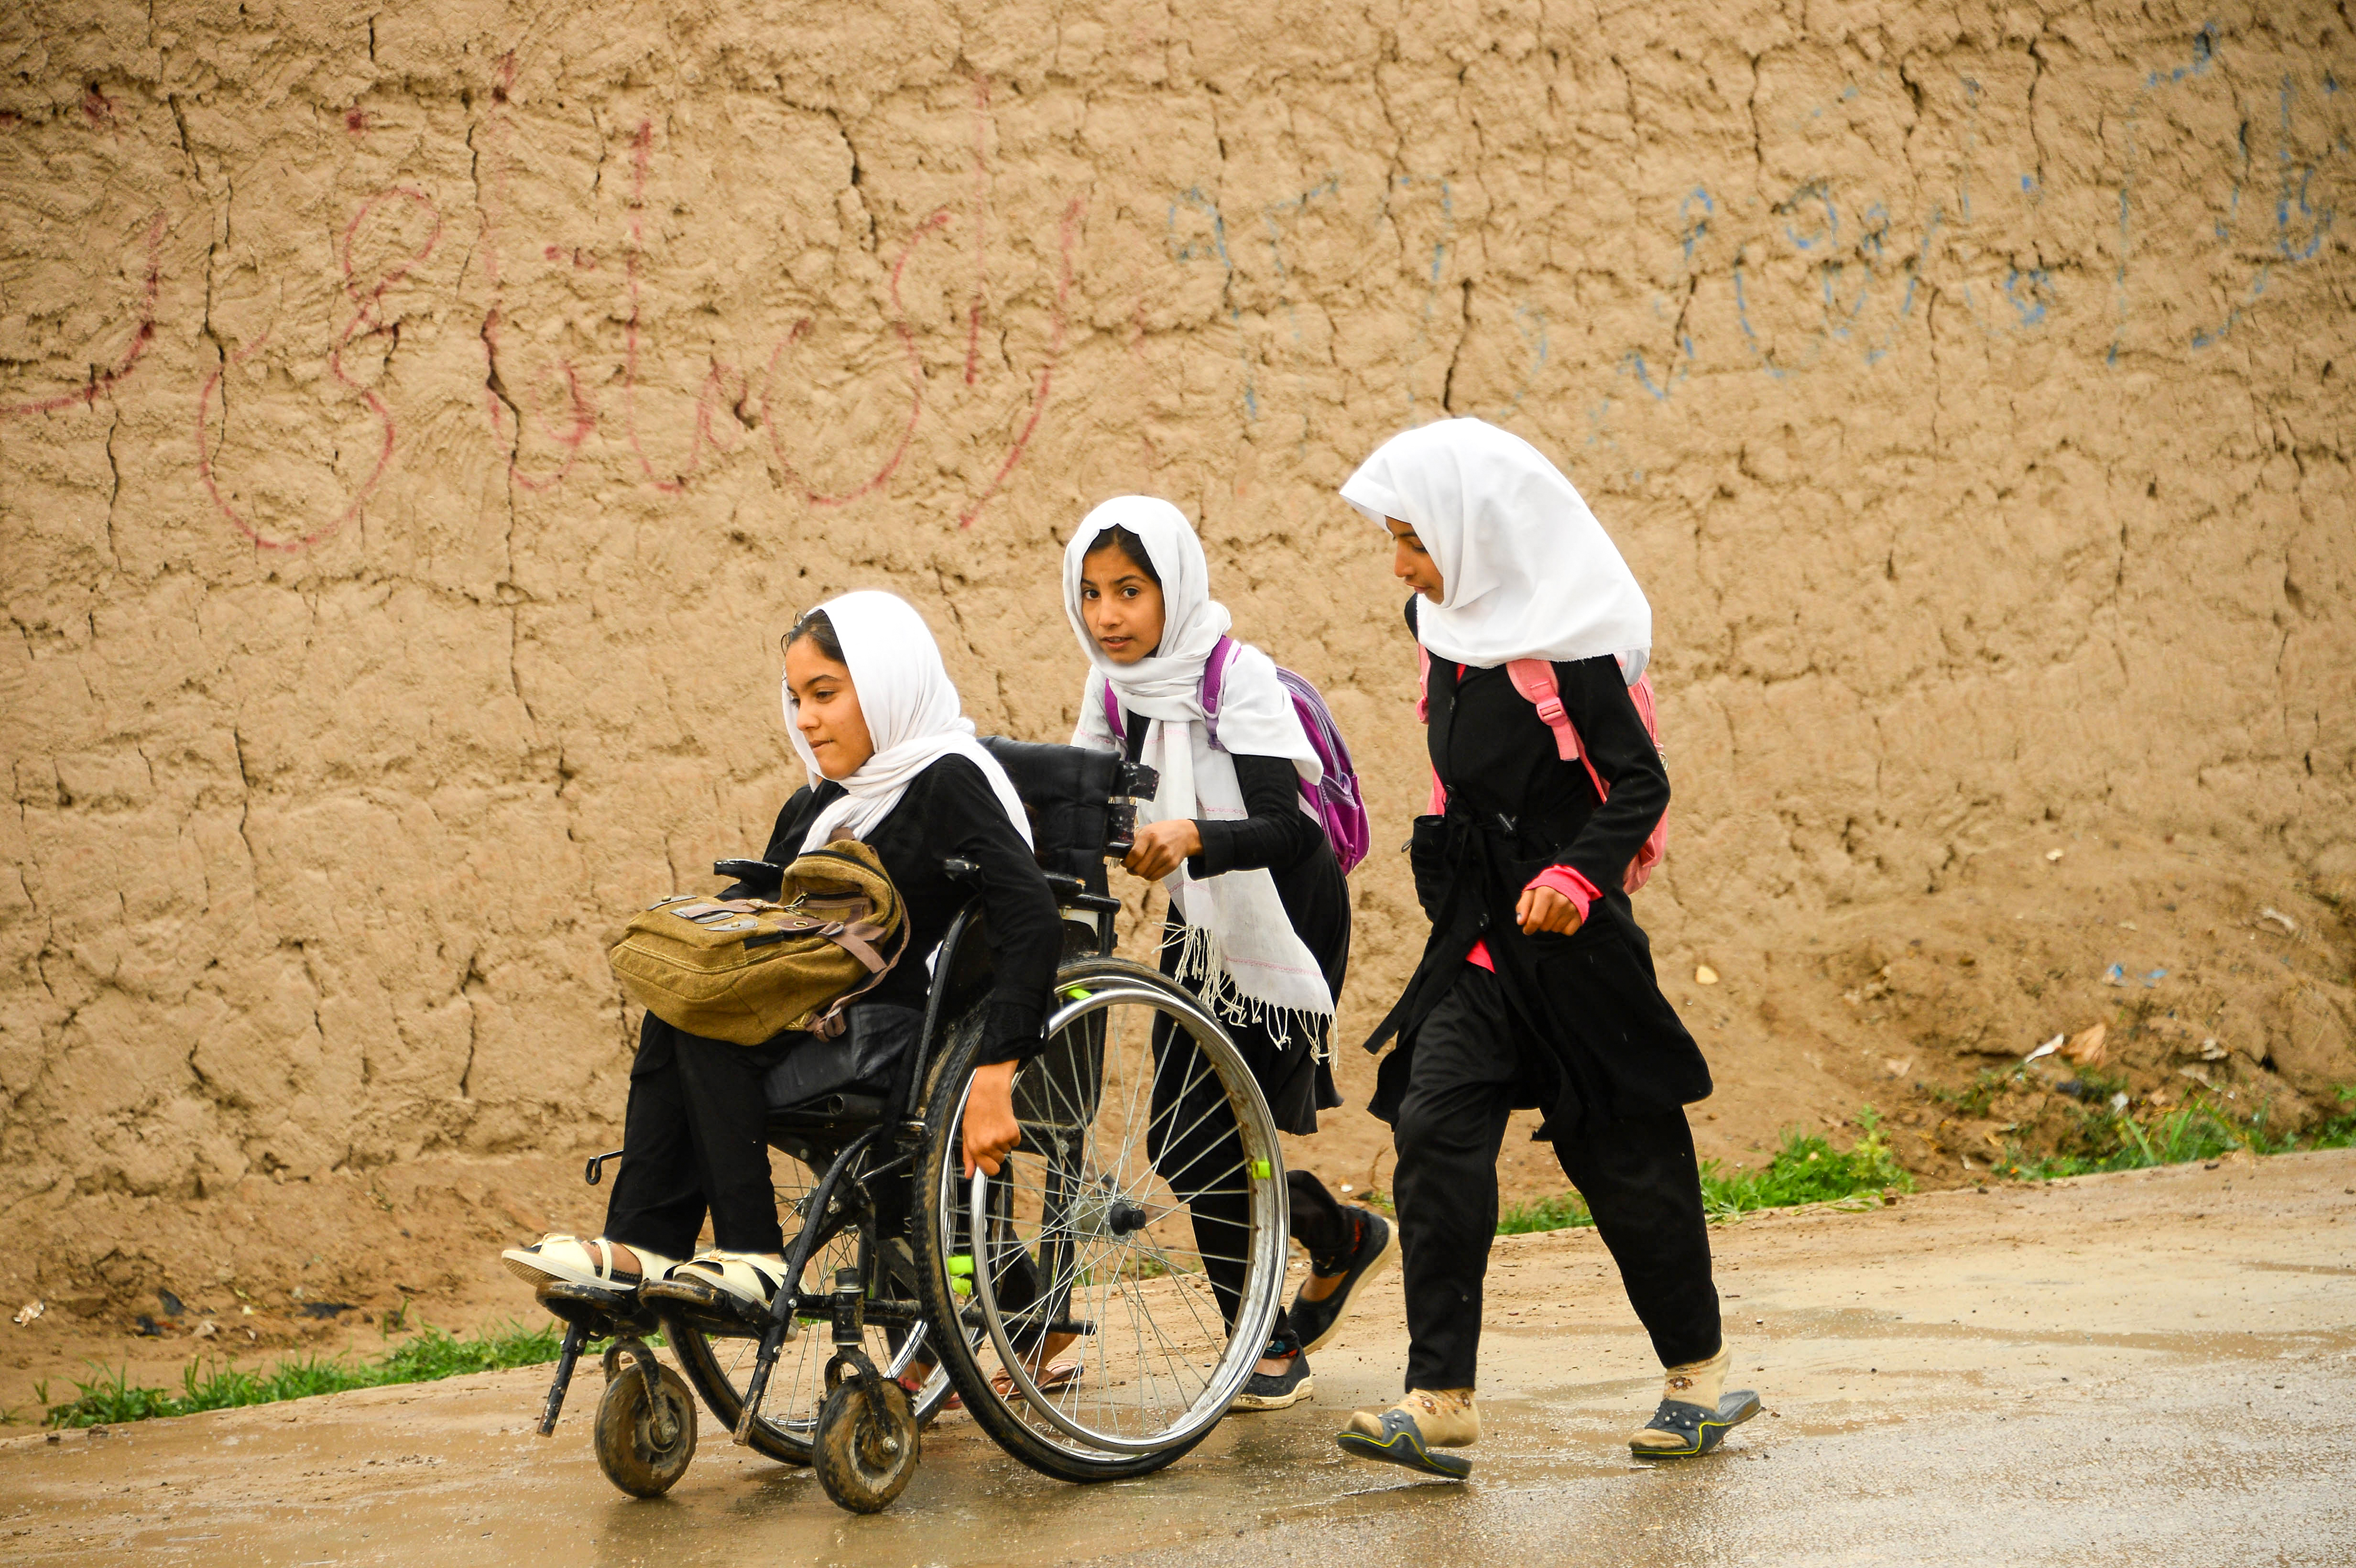 Megengedték a tálibok az afgán lányoknak, hogy érettségizzenek